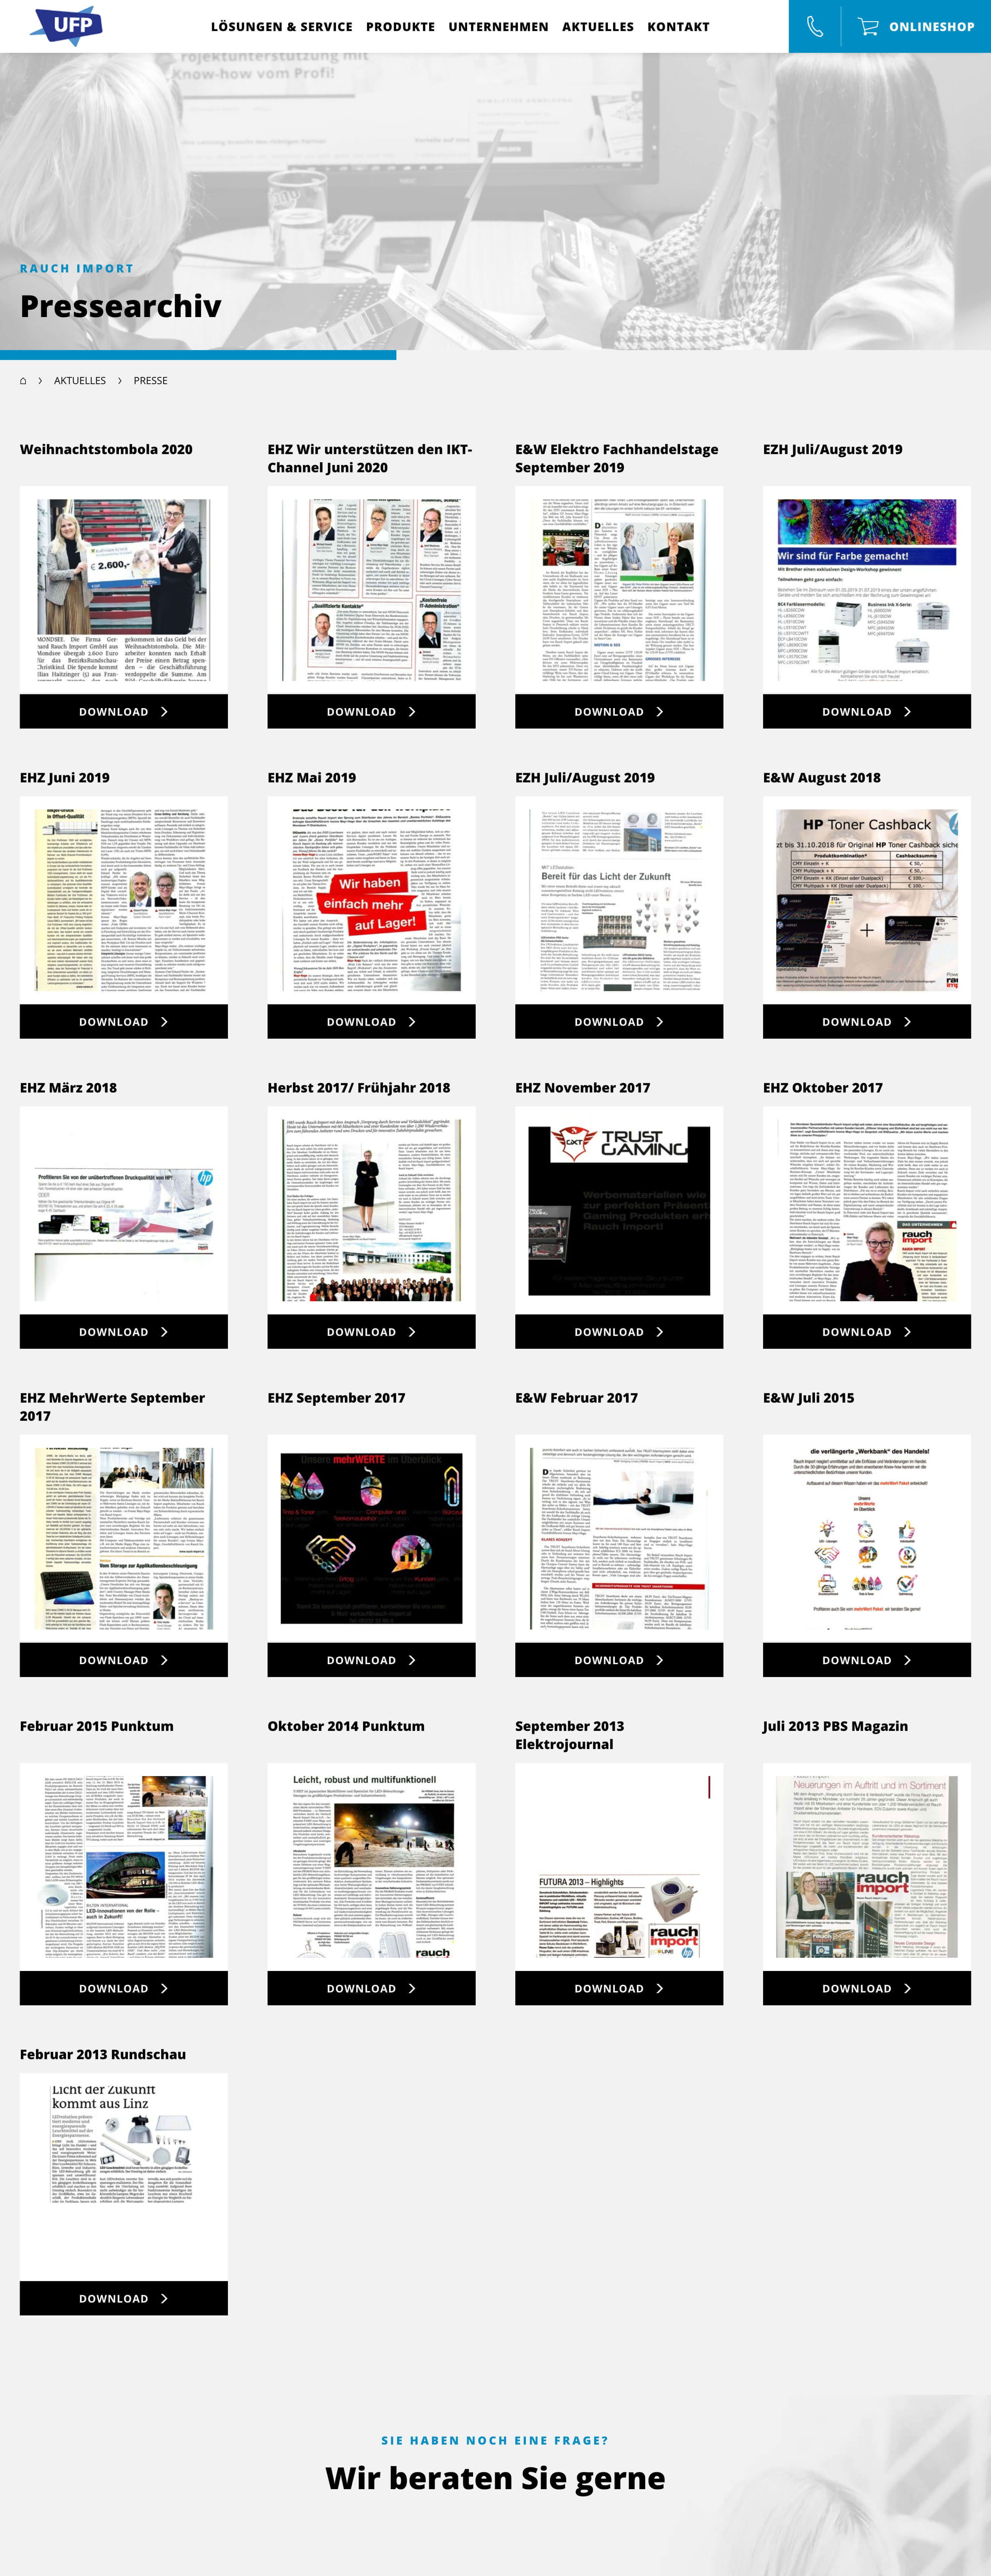 PDF-Download der Presseberichte mit automatischer Vorschaubildgenerierung und Lightbox-Funktion